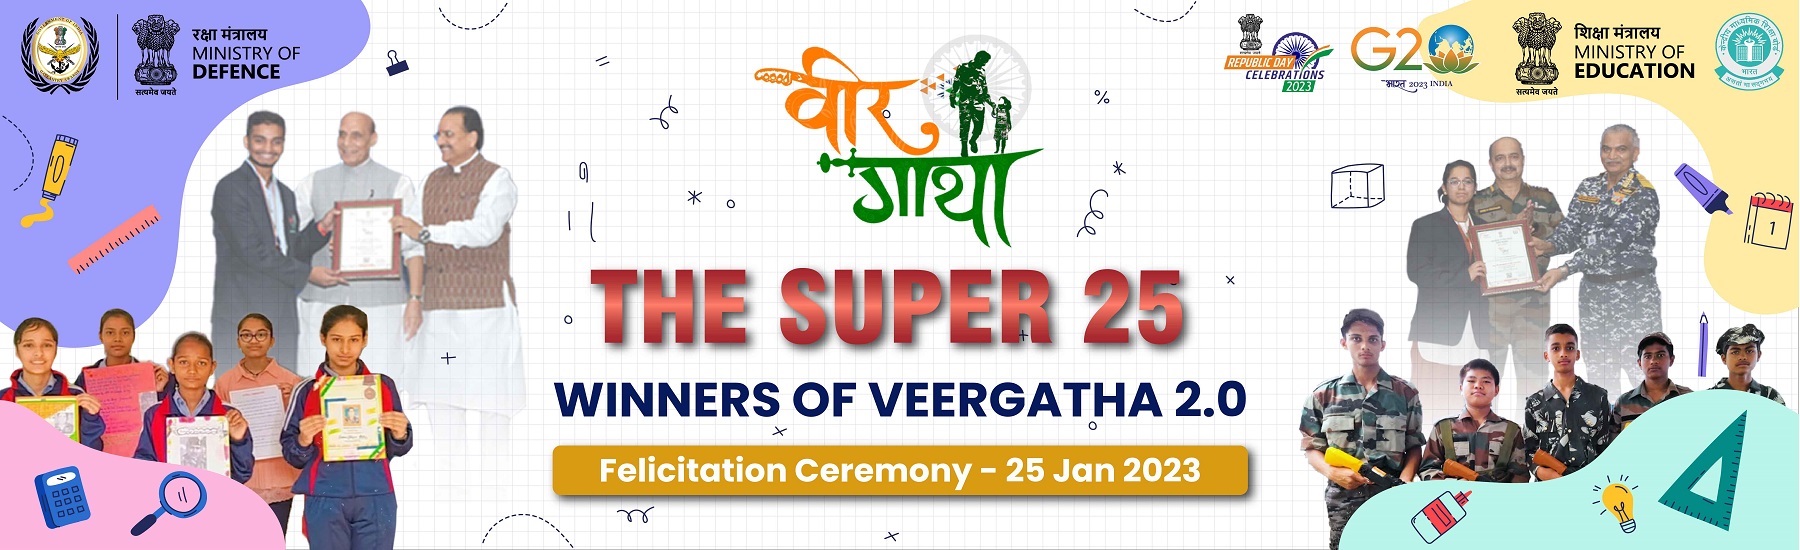 The Super 25 Winners of VEERGATHA 2.0